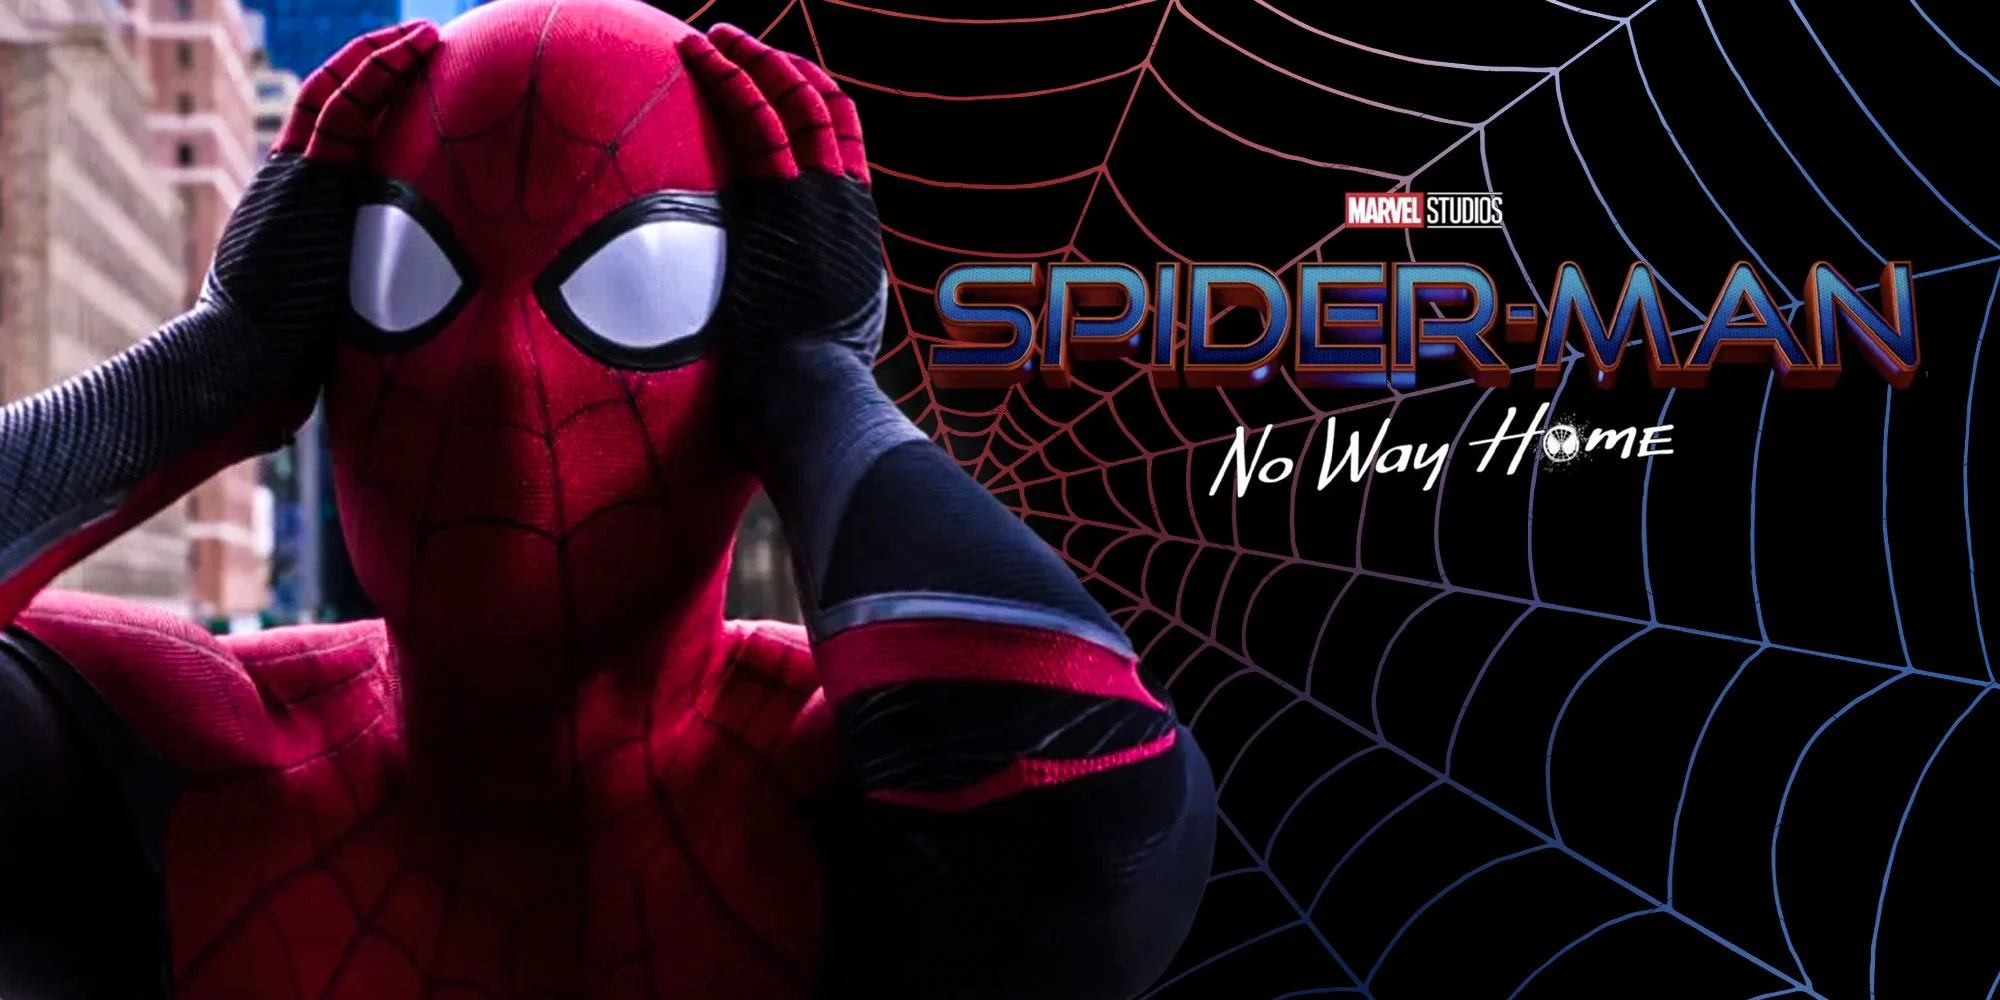 Spider-Man: No Way Home chính thức khởi chiếu toàn cầu vào ngày 17.12.2021 